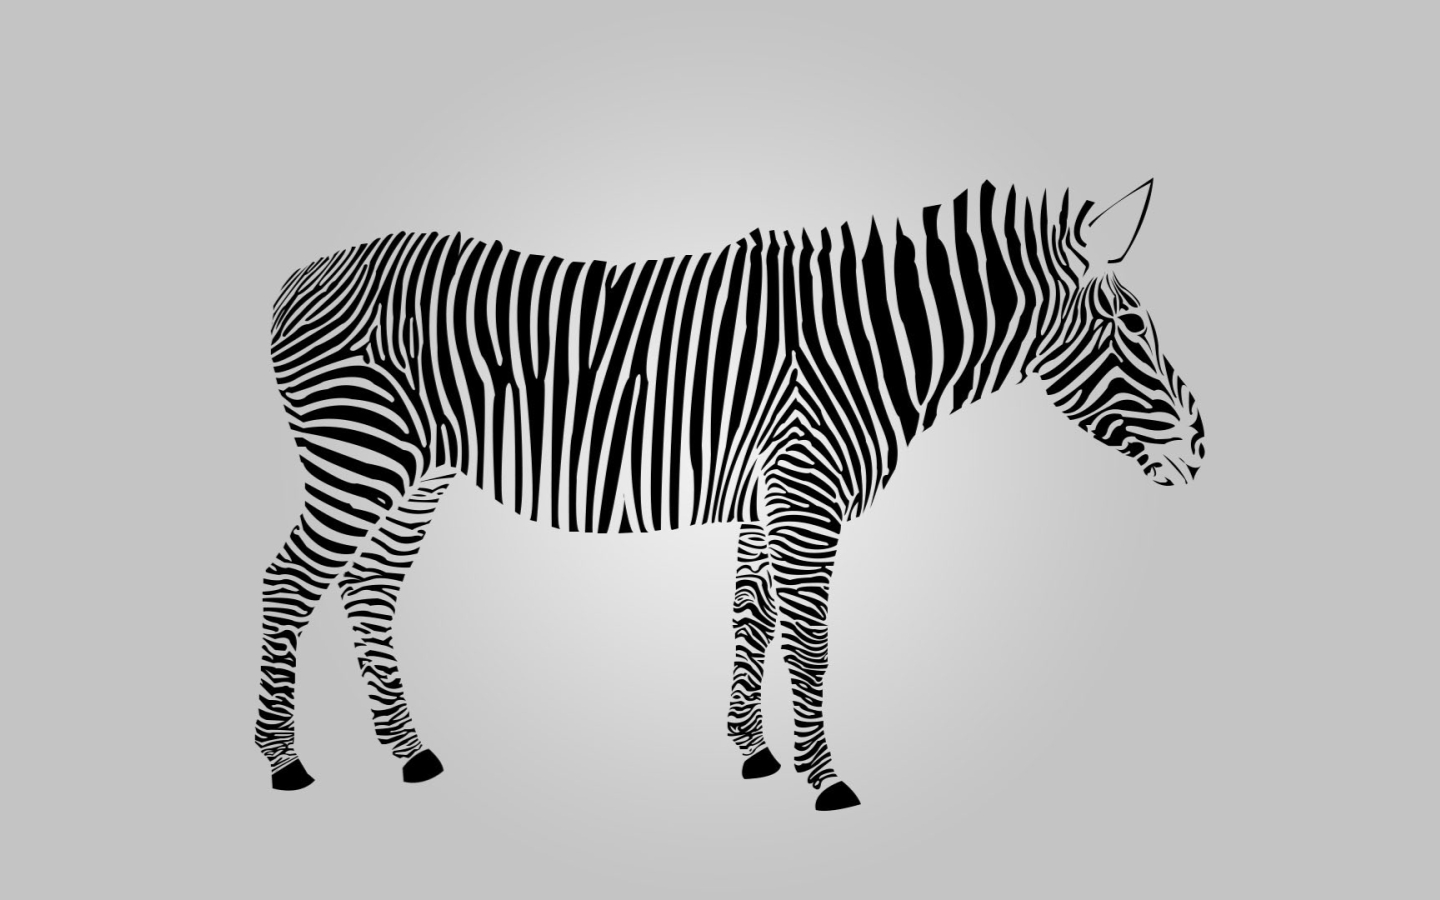 Zebra High Definition - HD Wallpaper 